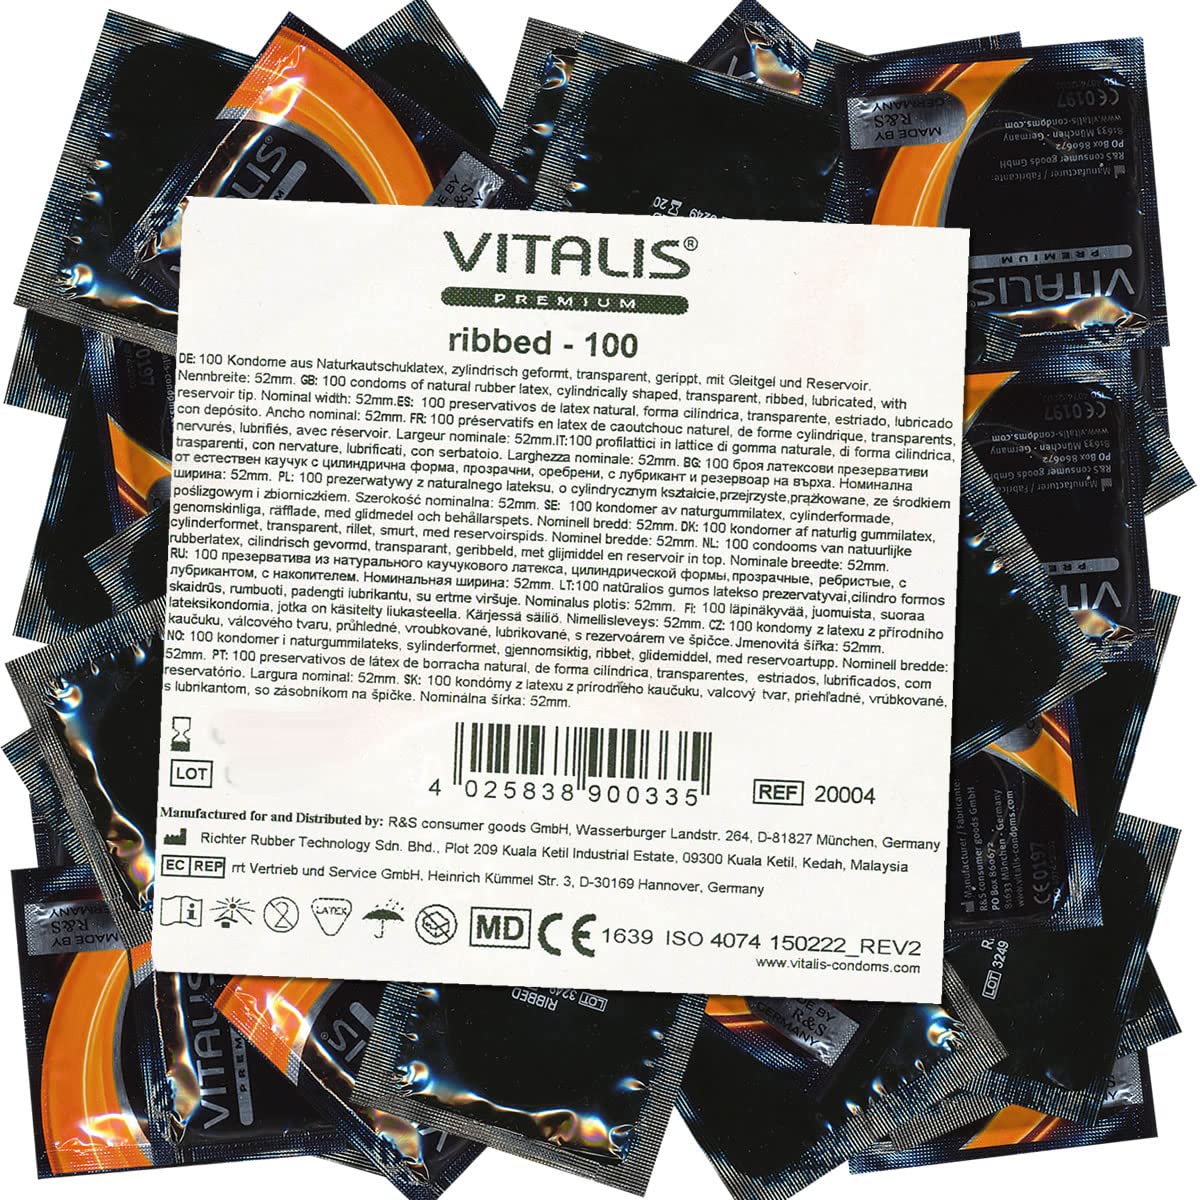 VITALIS 100 Kondome Pack Gerippt mit Riefen I Nennbreite 52 mm I Gefühlsechte Kondome I 100 Gerippte Premium Kondome mit Gleitmittel auf Silikonbasis I Hauchzarte strukturierte Kondome mit Riefen